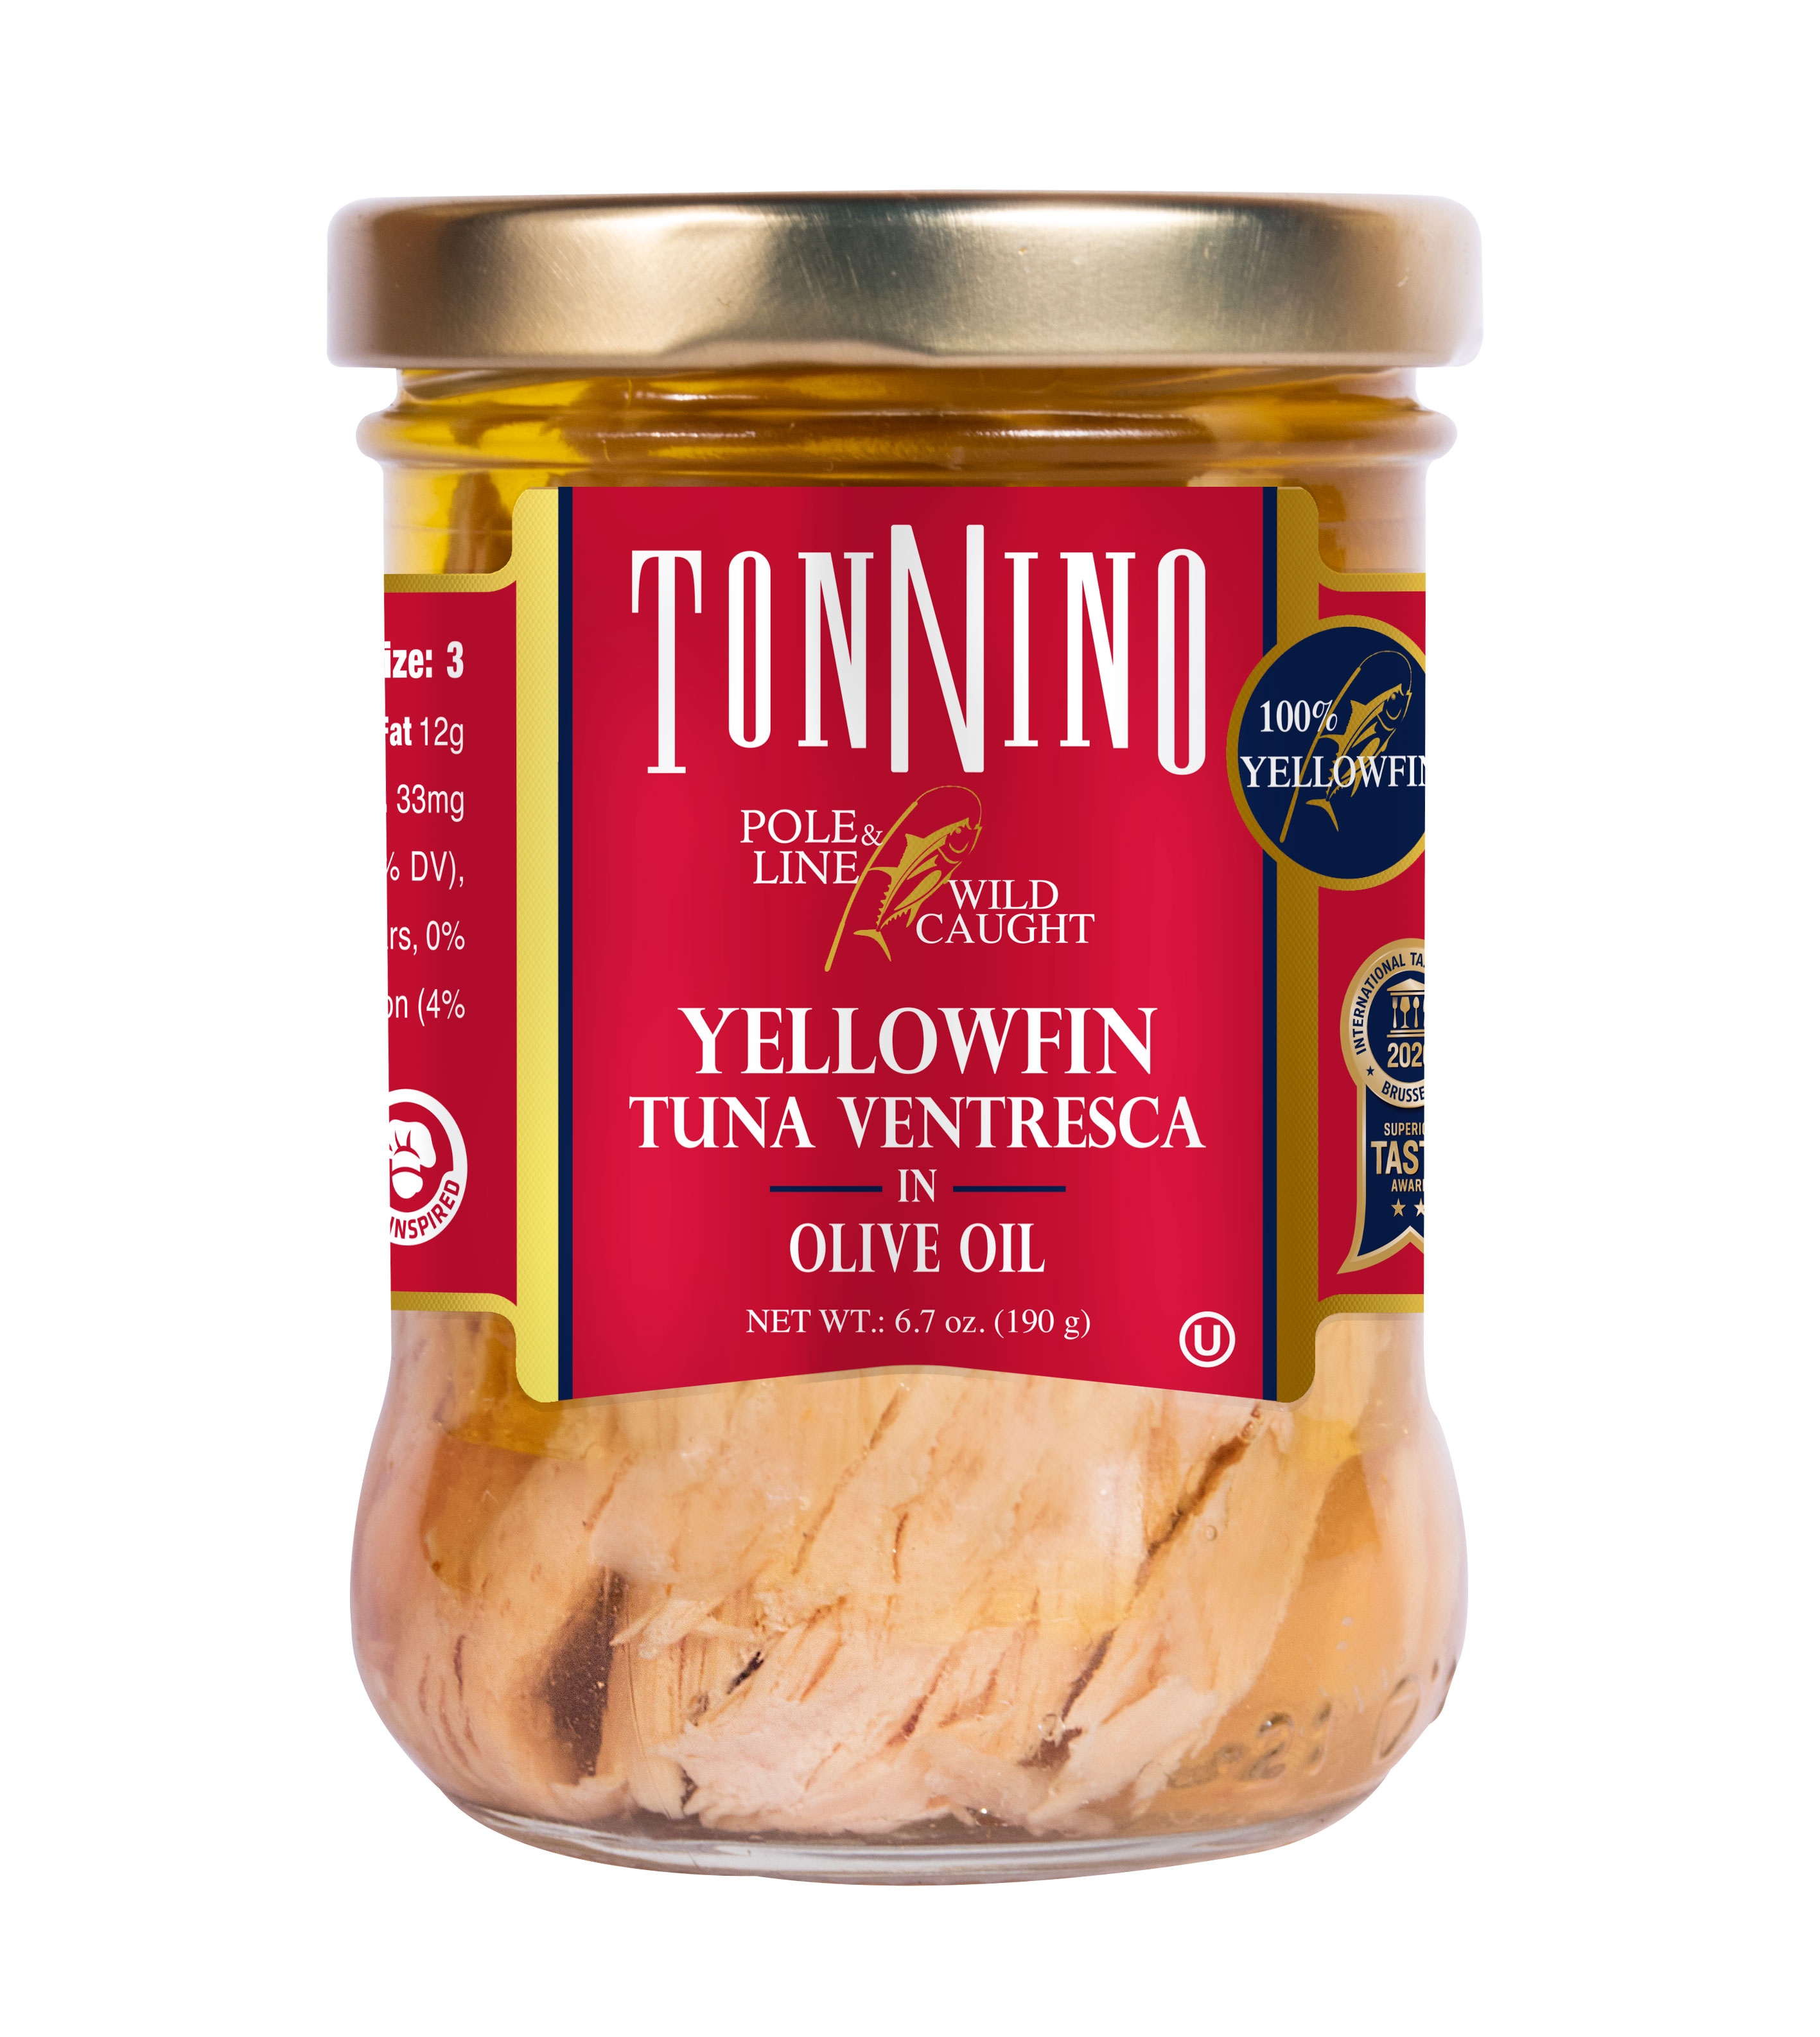 Tonnino Pole & Line Ventresca Yellowfin Tuna In Olive Oil, 6.7 oz